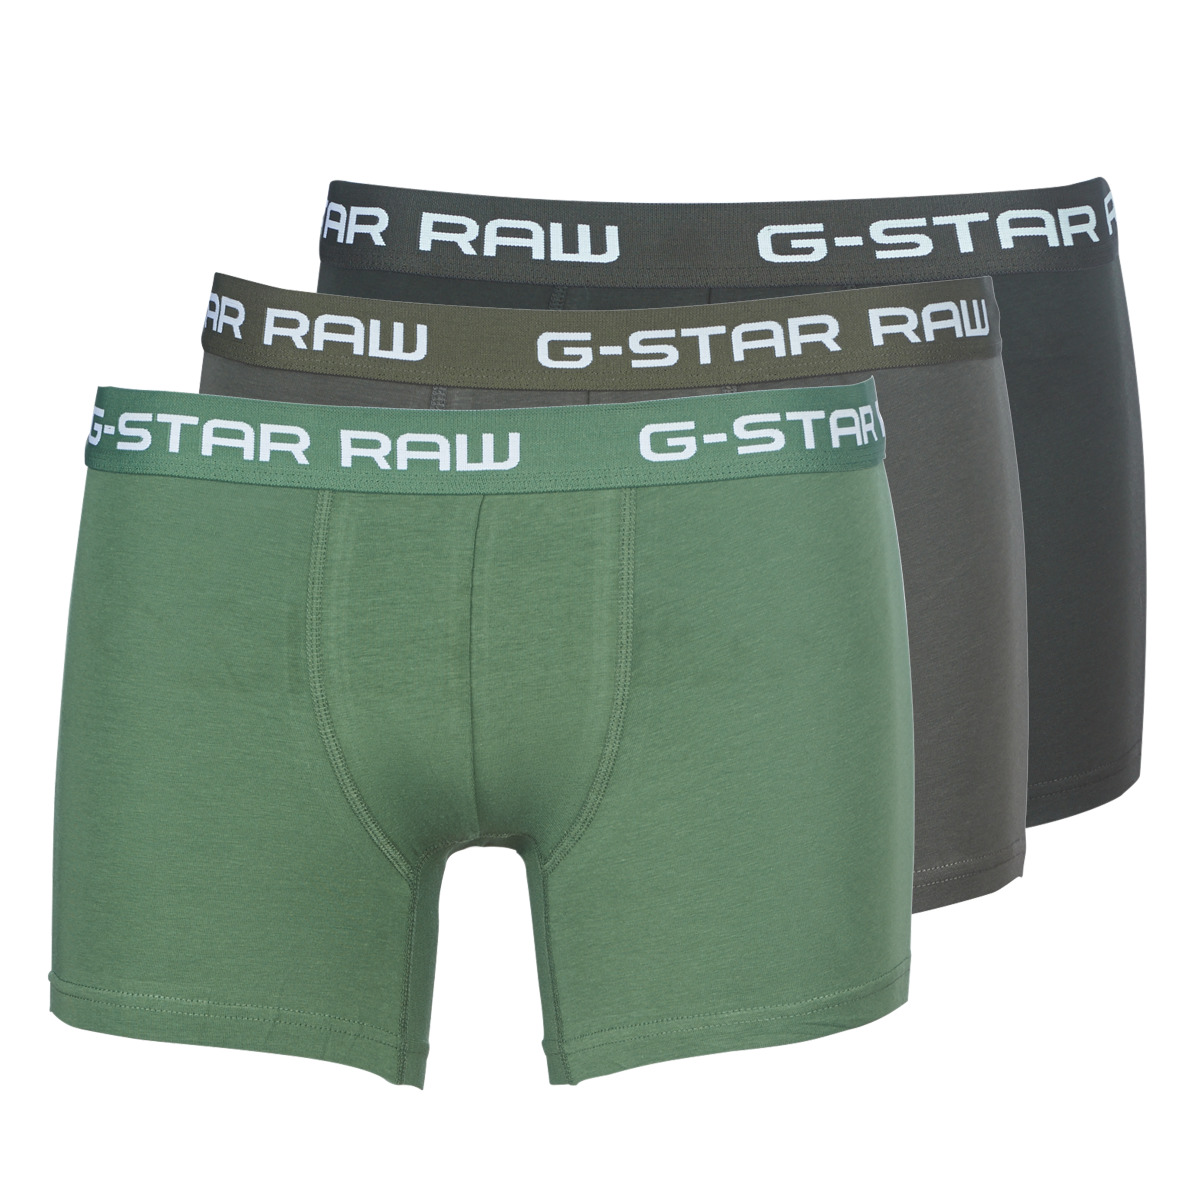 G-Star Raw Noir / Vert CLASSIC TRUNK CLR 3 PACK zdOm7K9